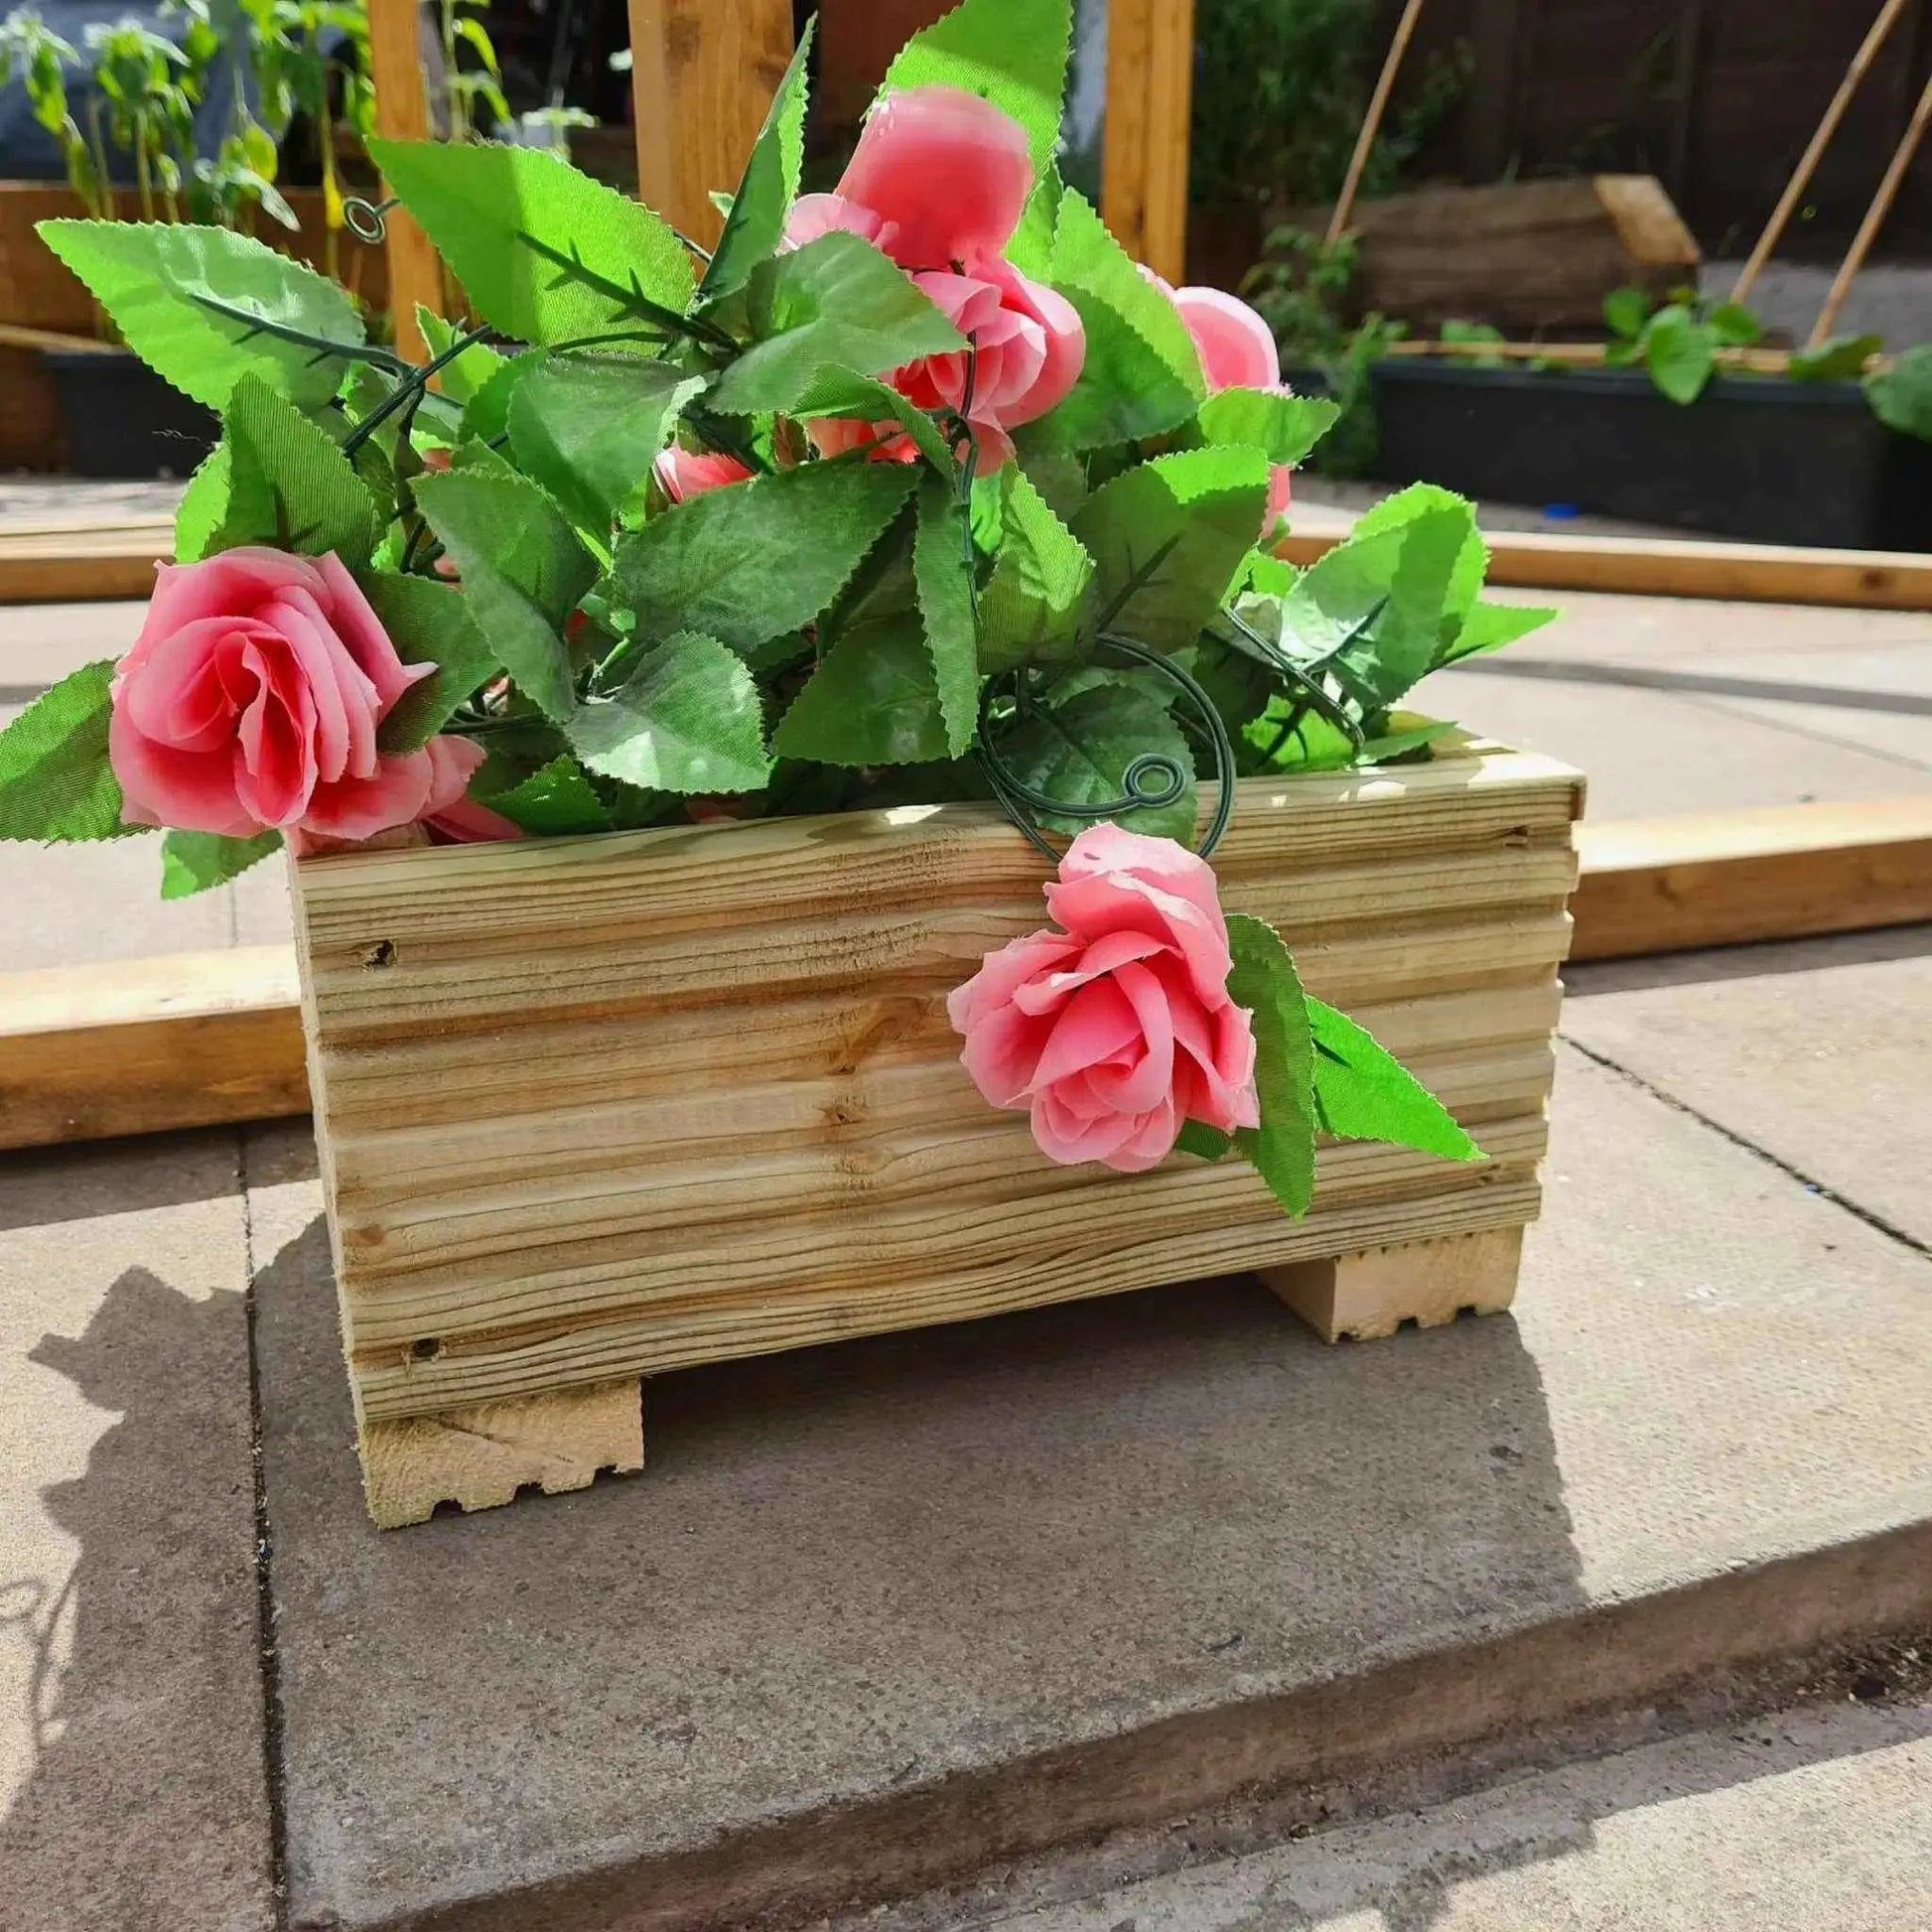 40cm Square Wooden Decking garden Planter - Summer Wooden Planters